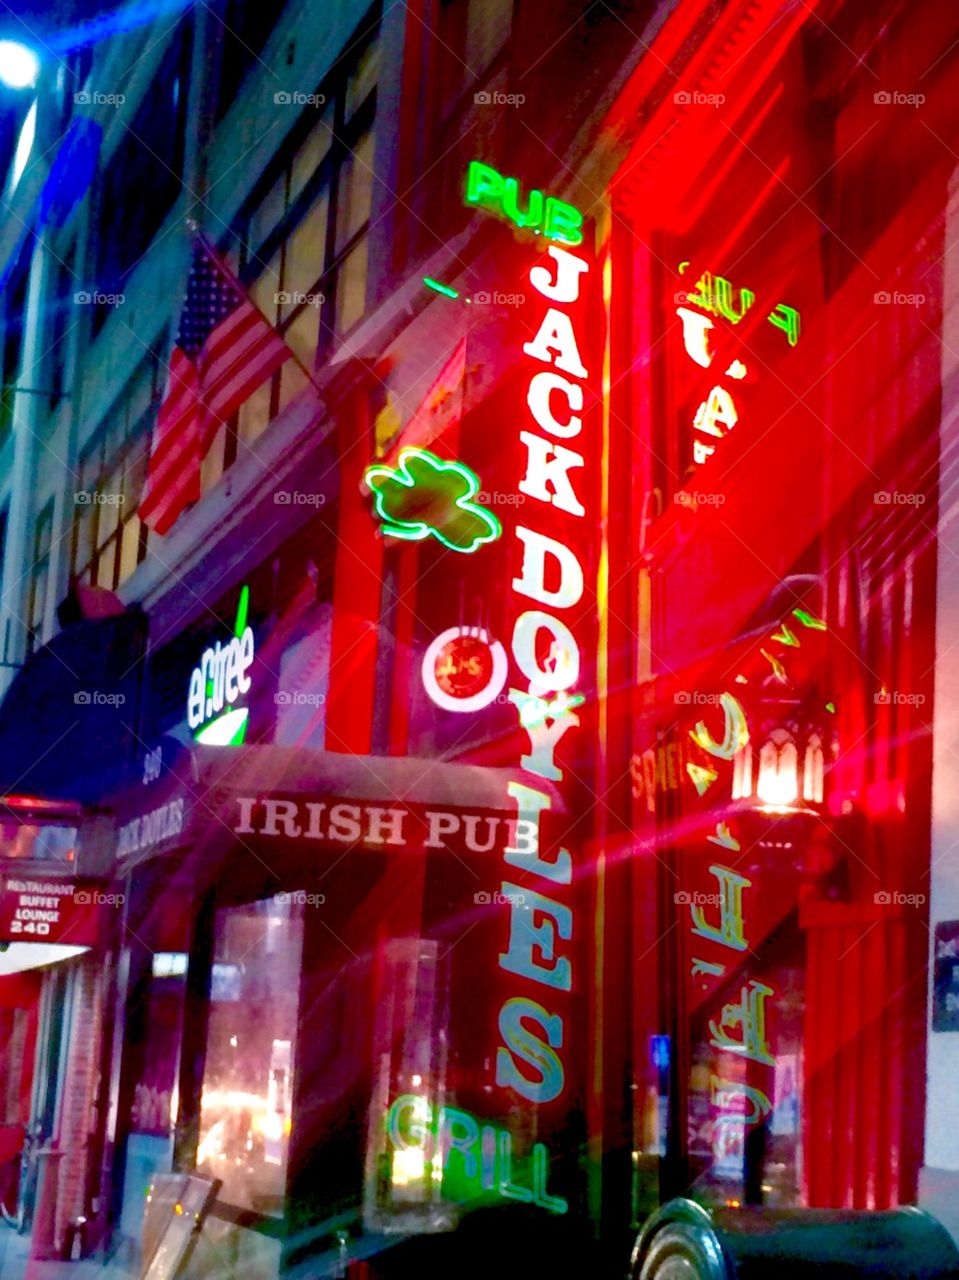 Classic NYC Irish pub exterior found in mid town Manhattan. 